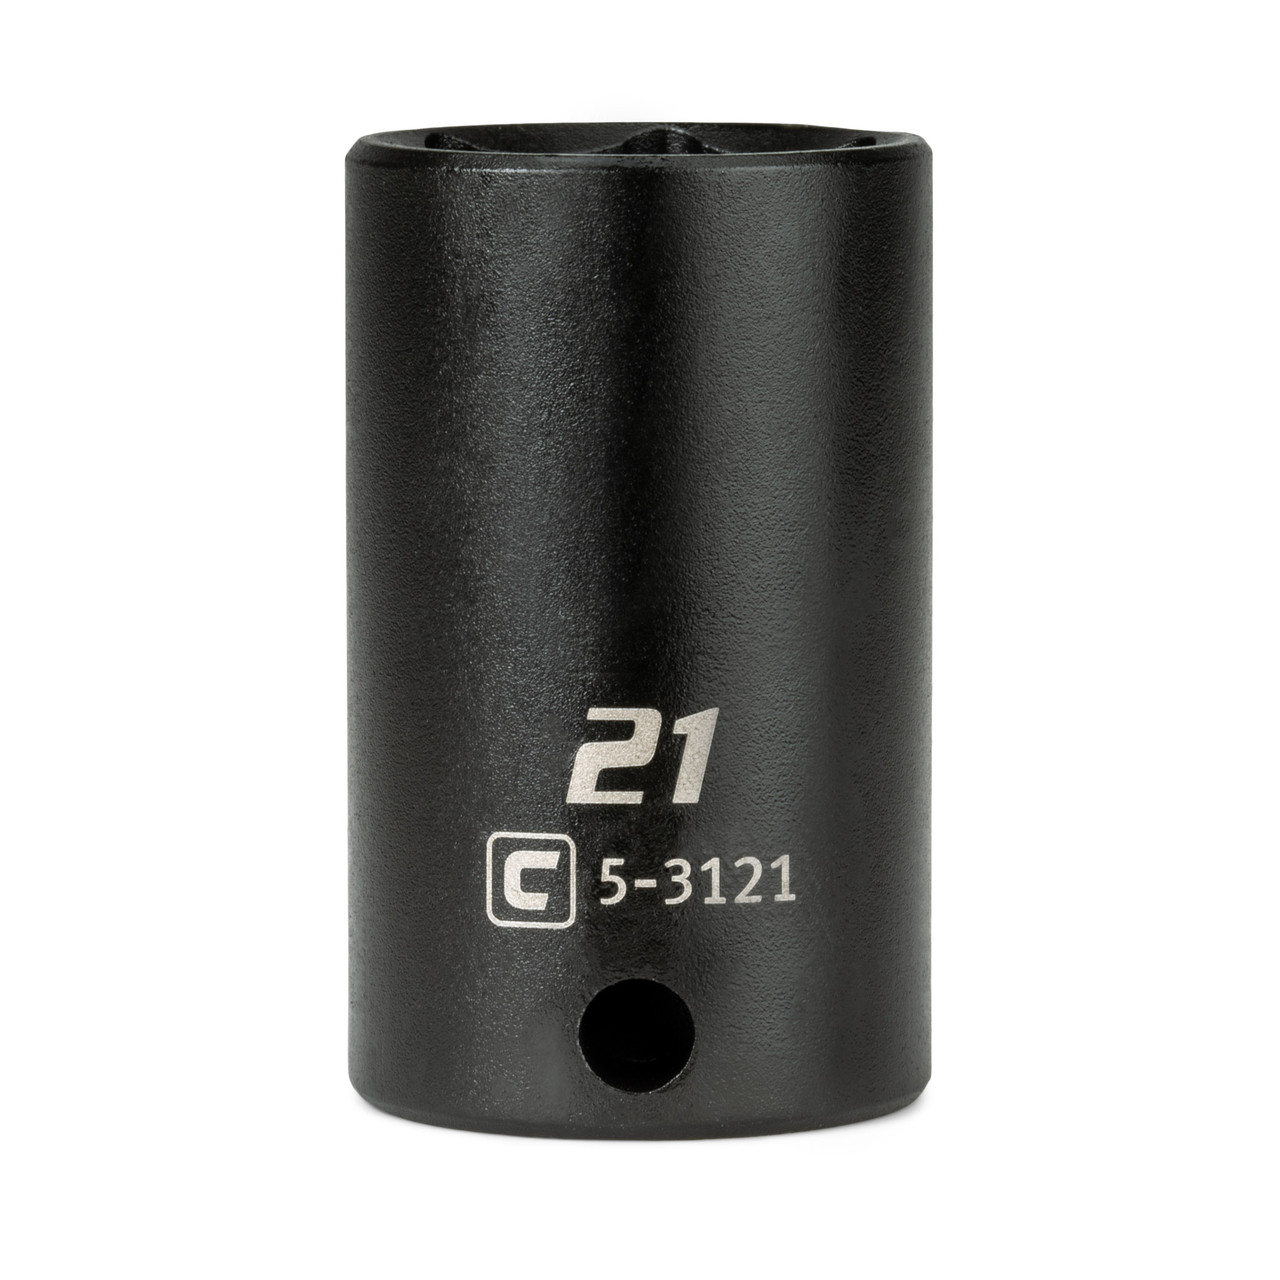 Capri Tools 3/8 in. Drive 21 mm Semi-Deep Impact Socket